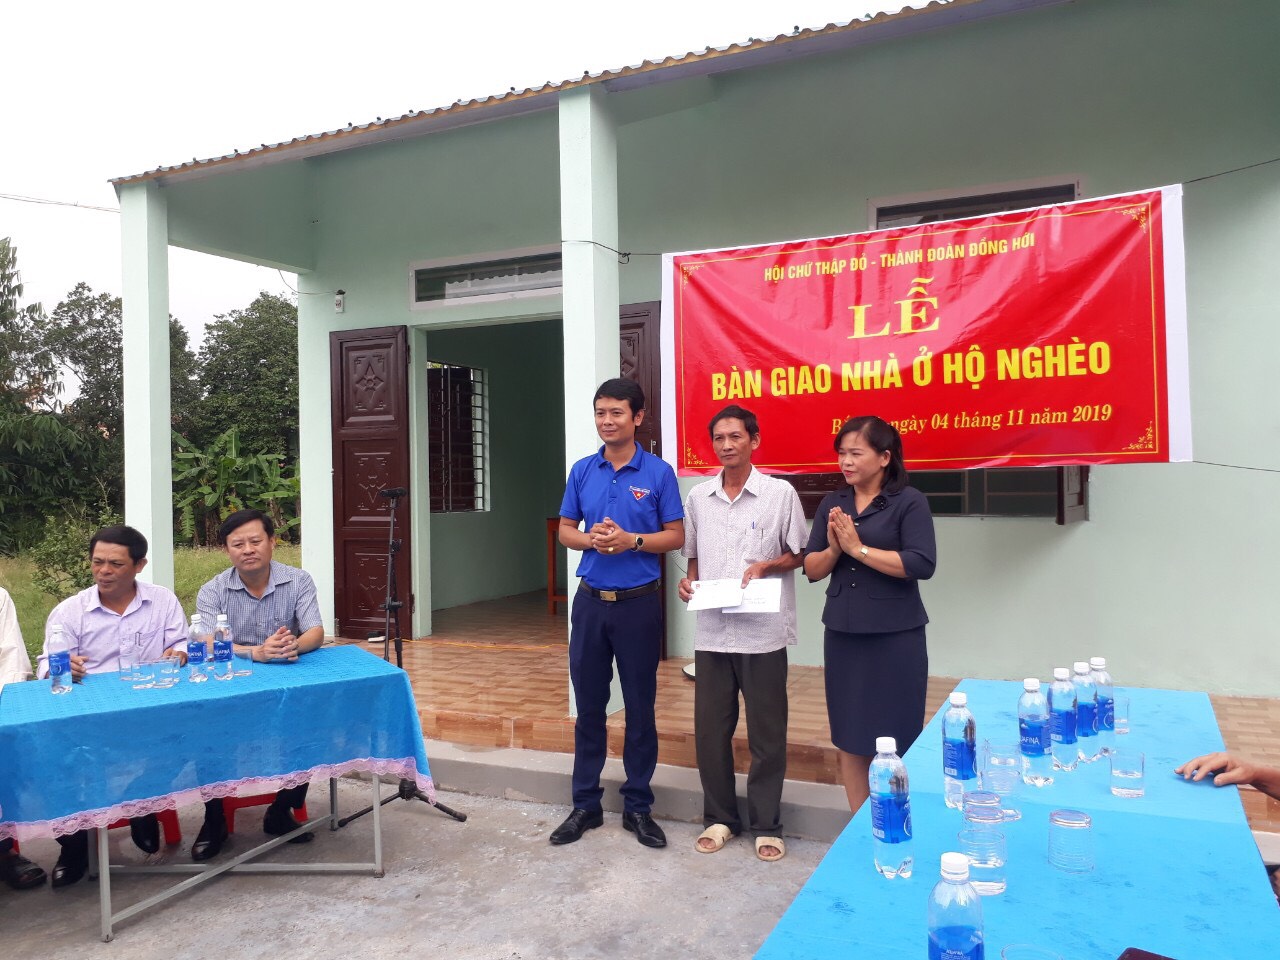 Hội Chữ thập đỏ TP. Đồng Hới phối hợp với Thành đoàn tổ chức bàn giao nhà ở cho ông Nguyễn Văn Thiết